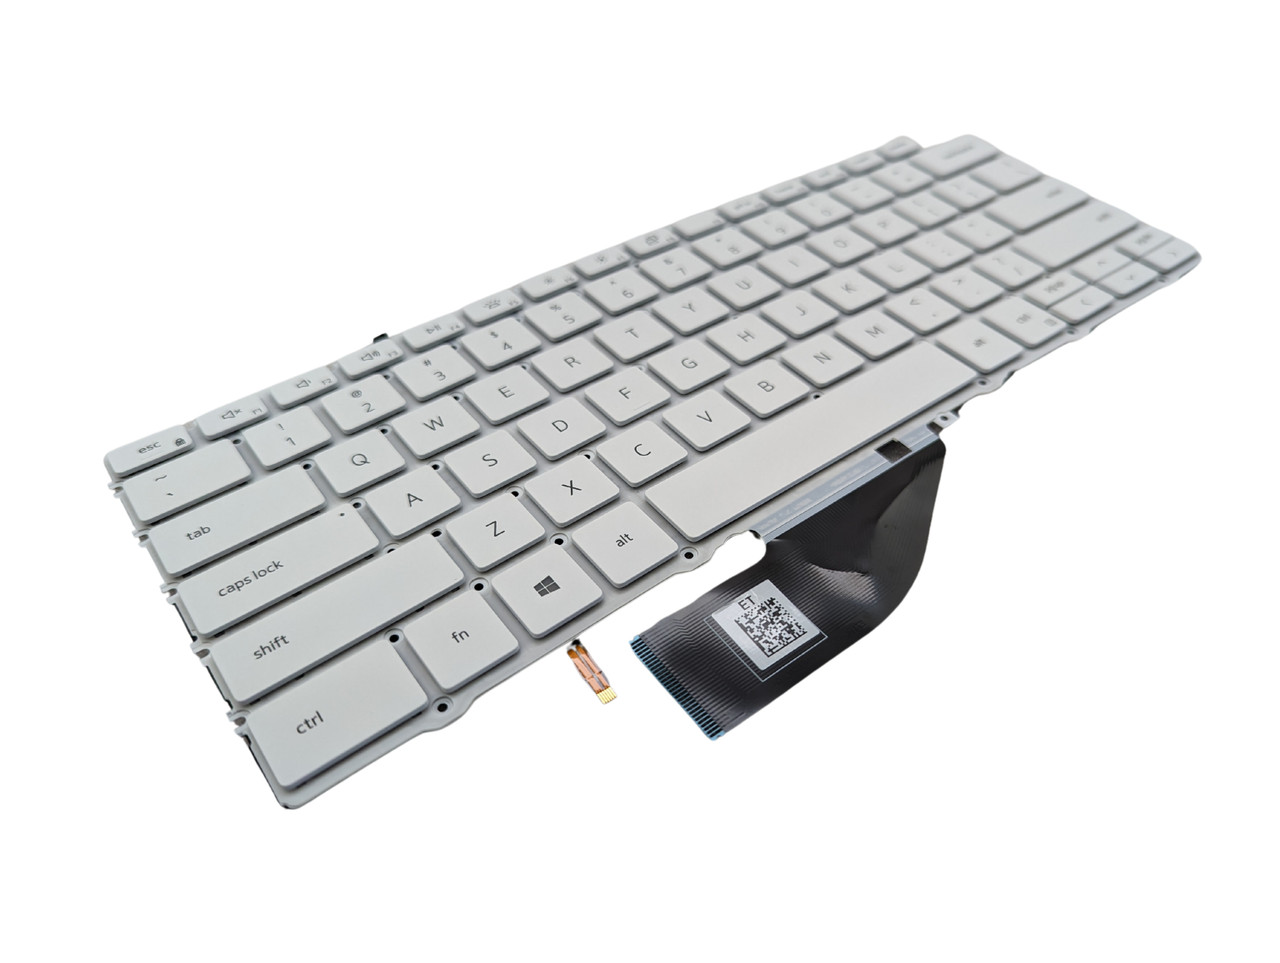 Dell XPS 9310 7390 2-in-1 White Backlit US Keyboard - XD3H3 VKJ01